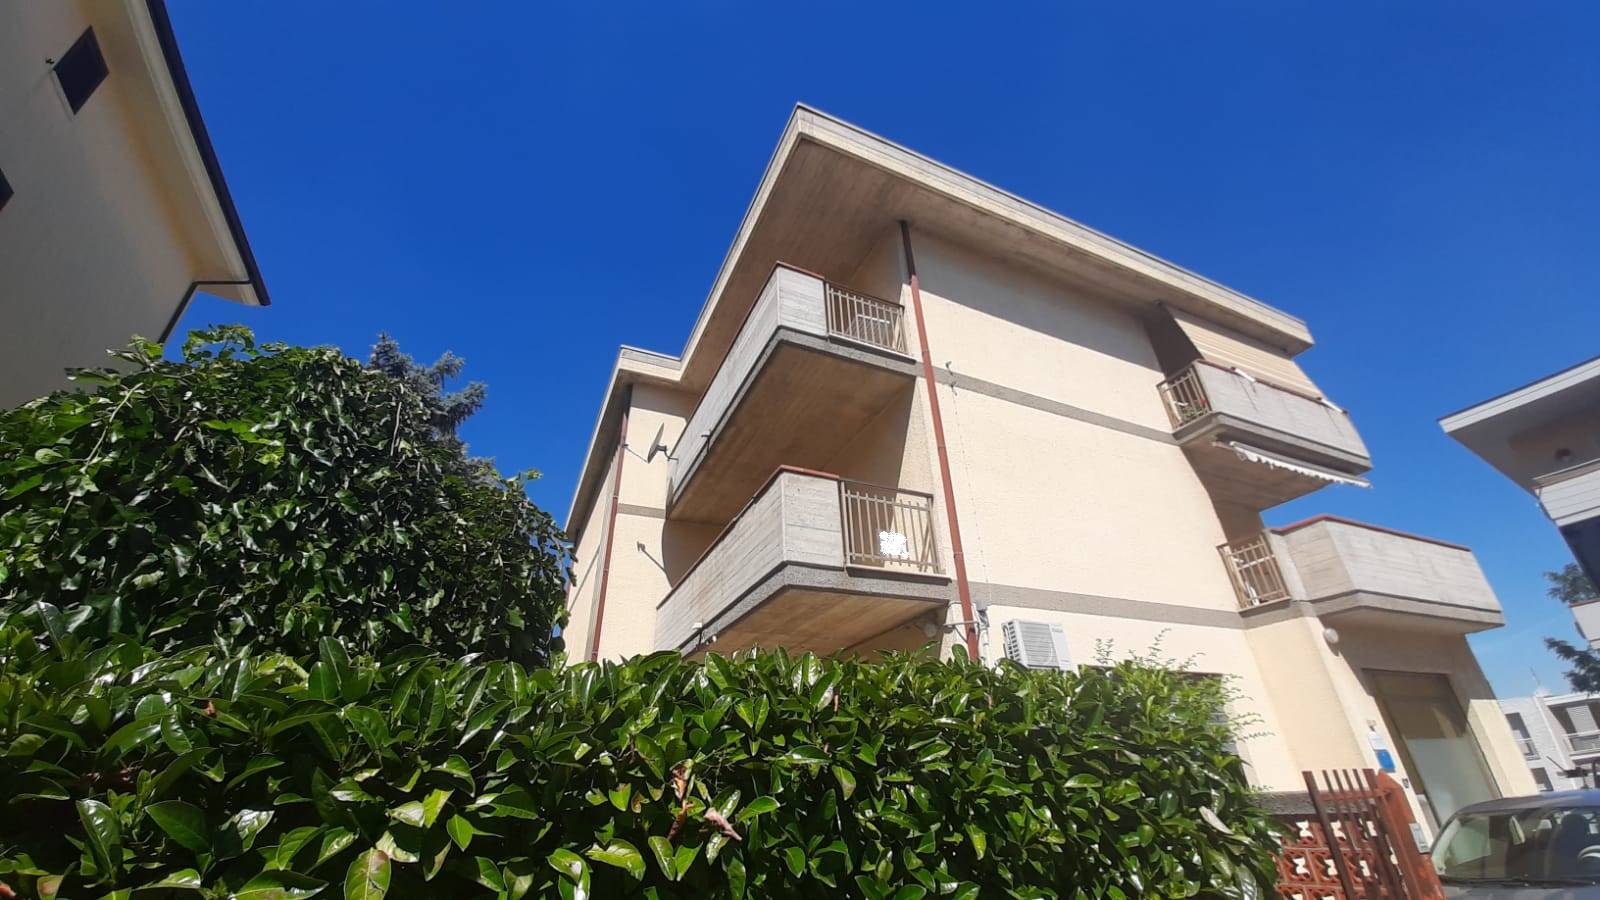 Appartamento in vendita a Mosciano Sant'Angelo, 6 locali, prezzo € 125.000 | PortaleAgenzieImmobiliari.it